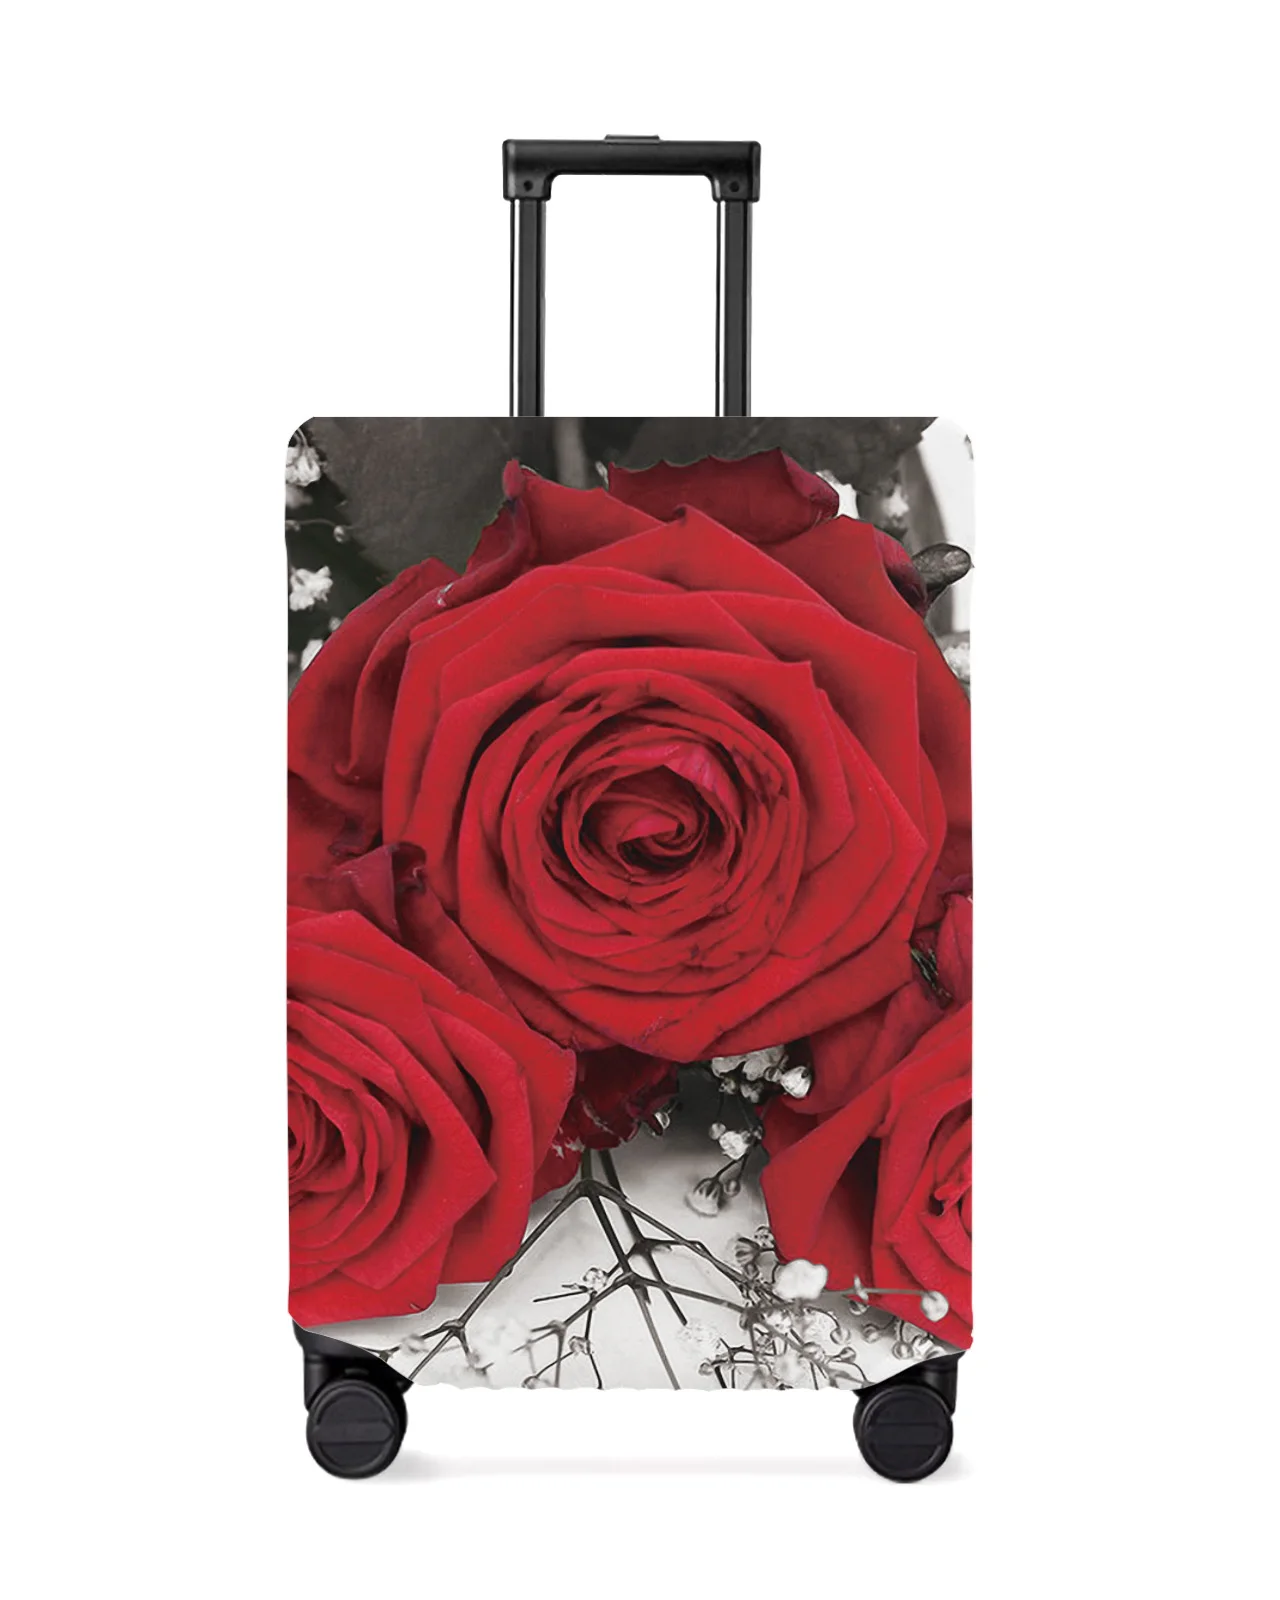 juste-de-protection-pour-bagages-de-voyage-vintage-fleur-de-rose-rouge-accessoires-de-valise-etui-anti-poussiere-elastique-manchon-de-protection